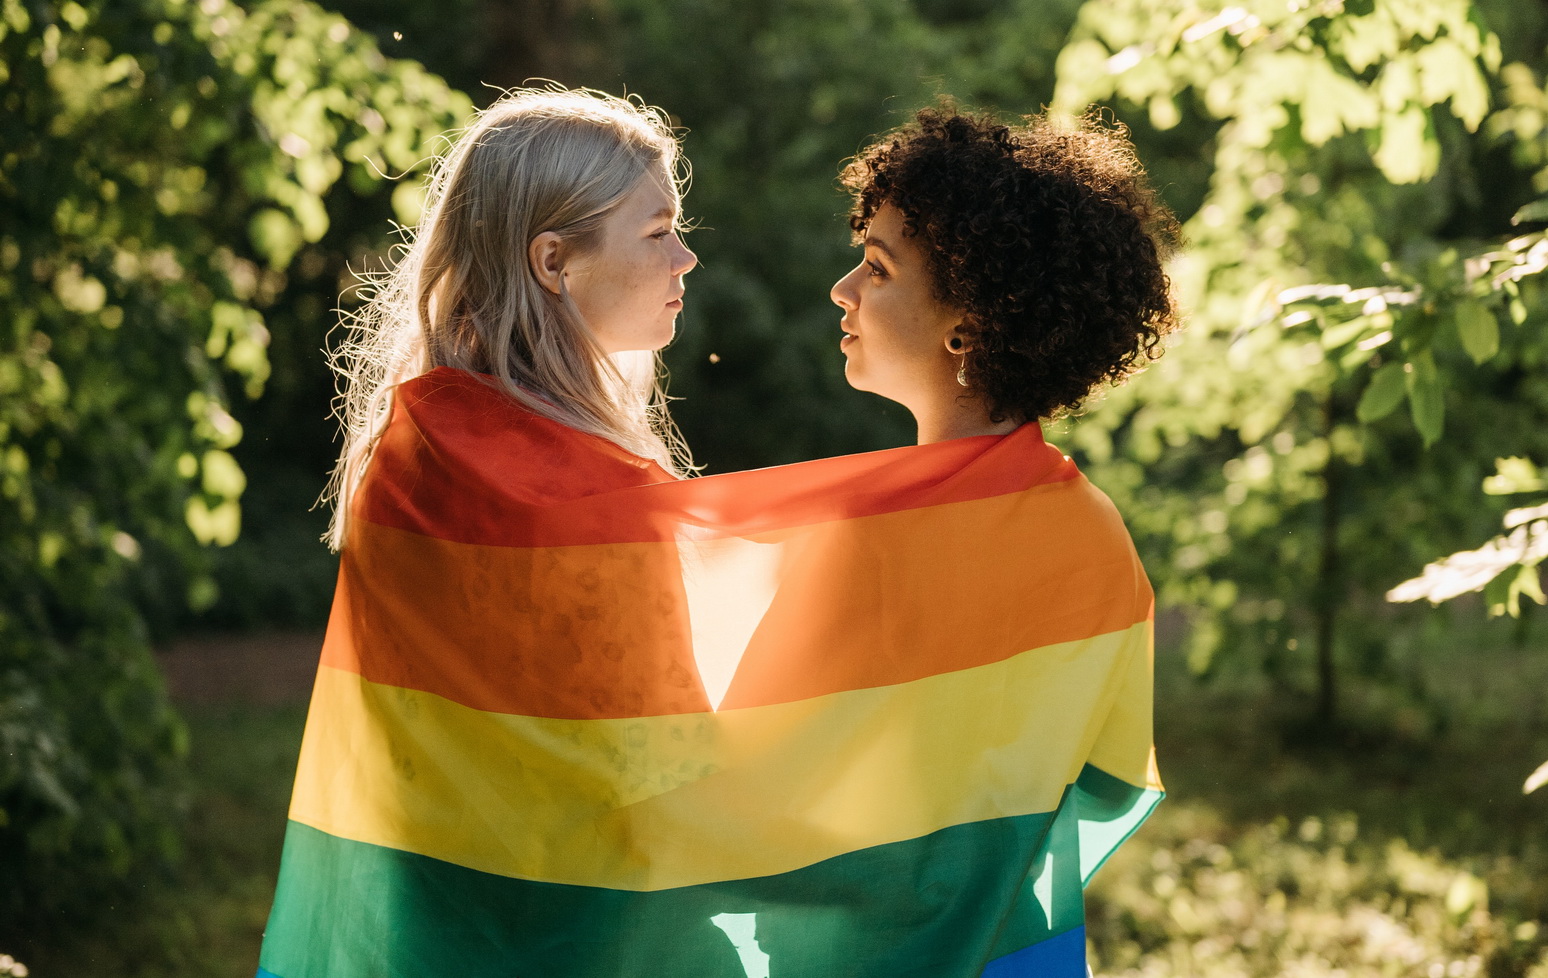 Союз женщины и женщины: как живет ЛГБТ-семья в Латвии и почему они не могут узаконить отношения